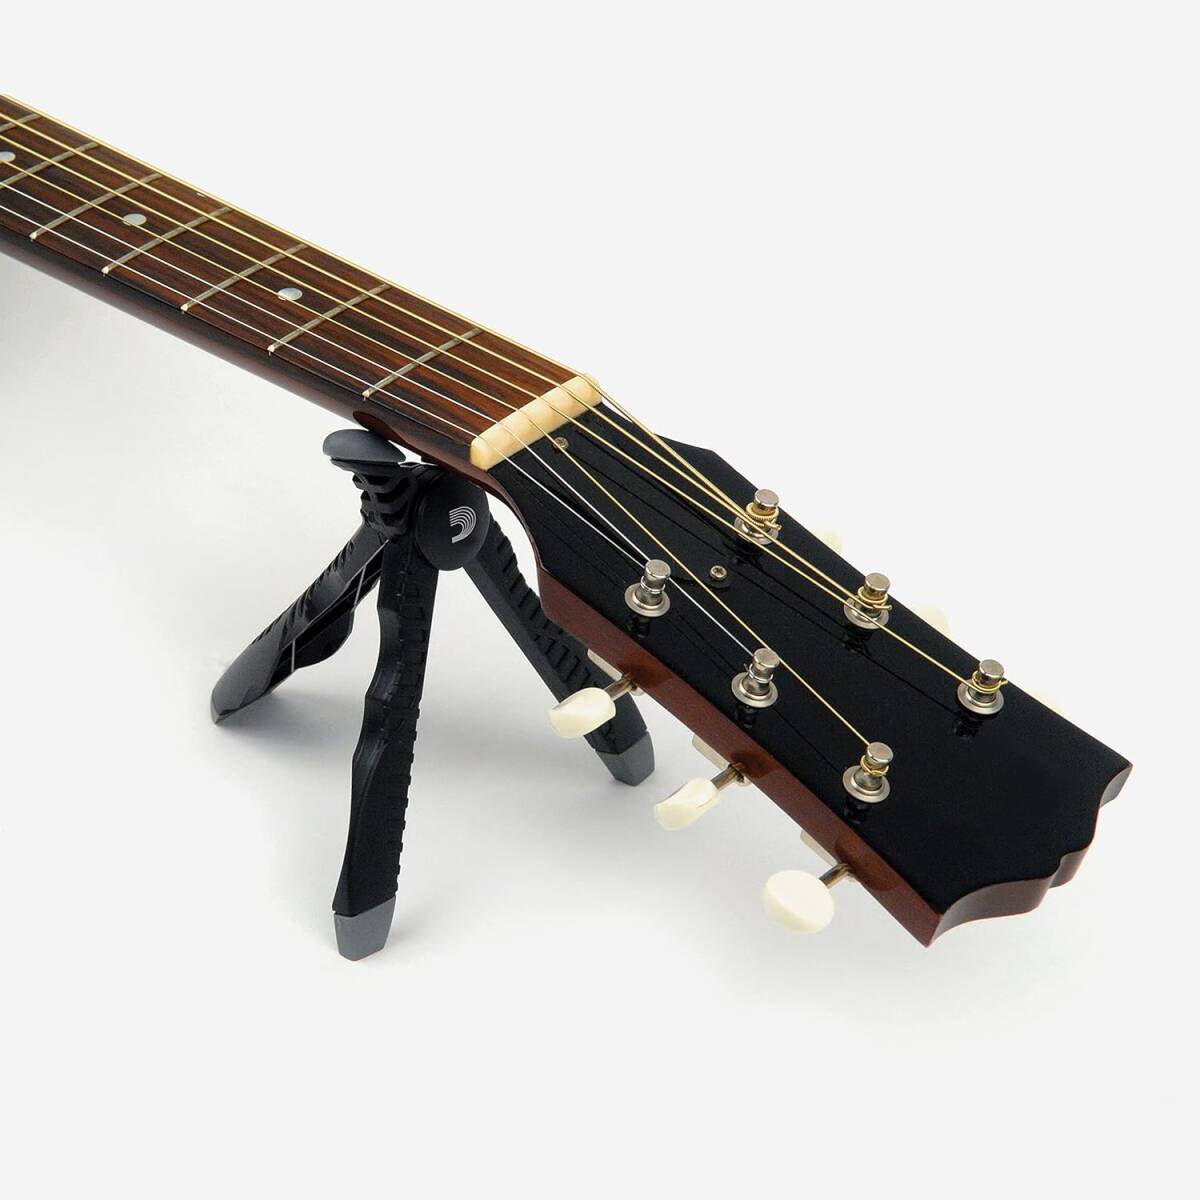 D\'Addario D'Addario гитара для техобслуживания шея подставка ( head подставка ) складной The Headstand